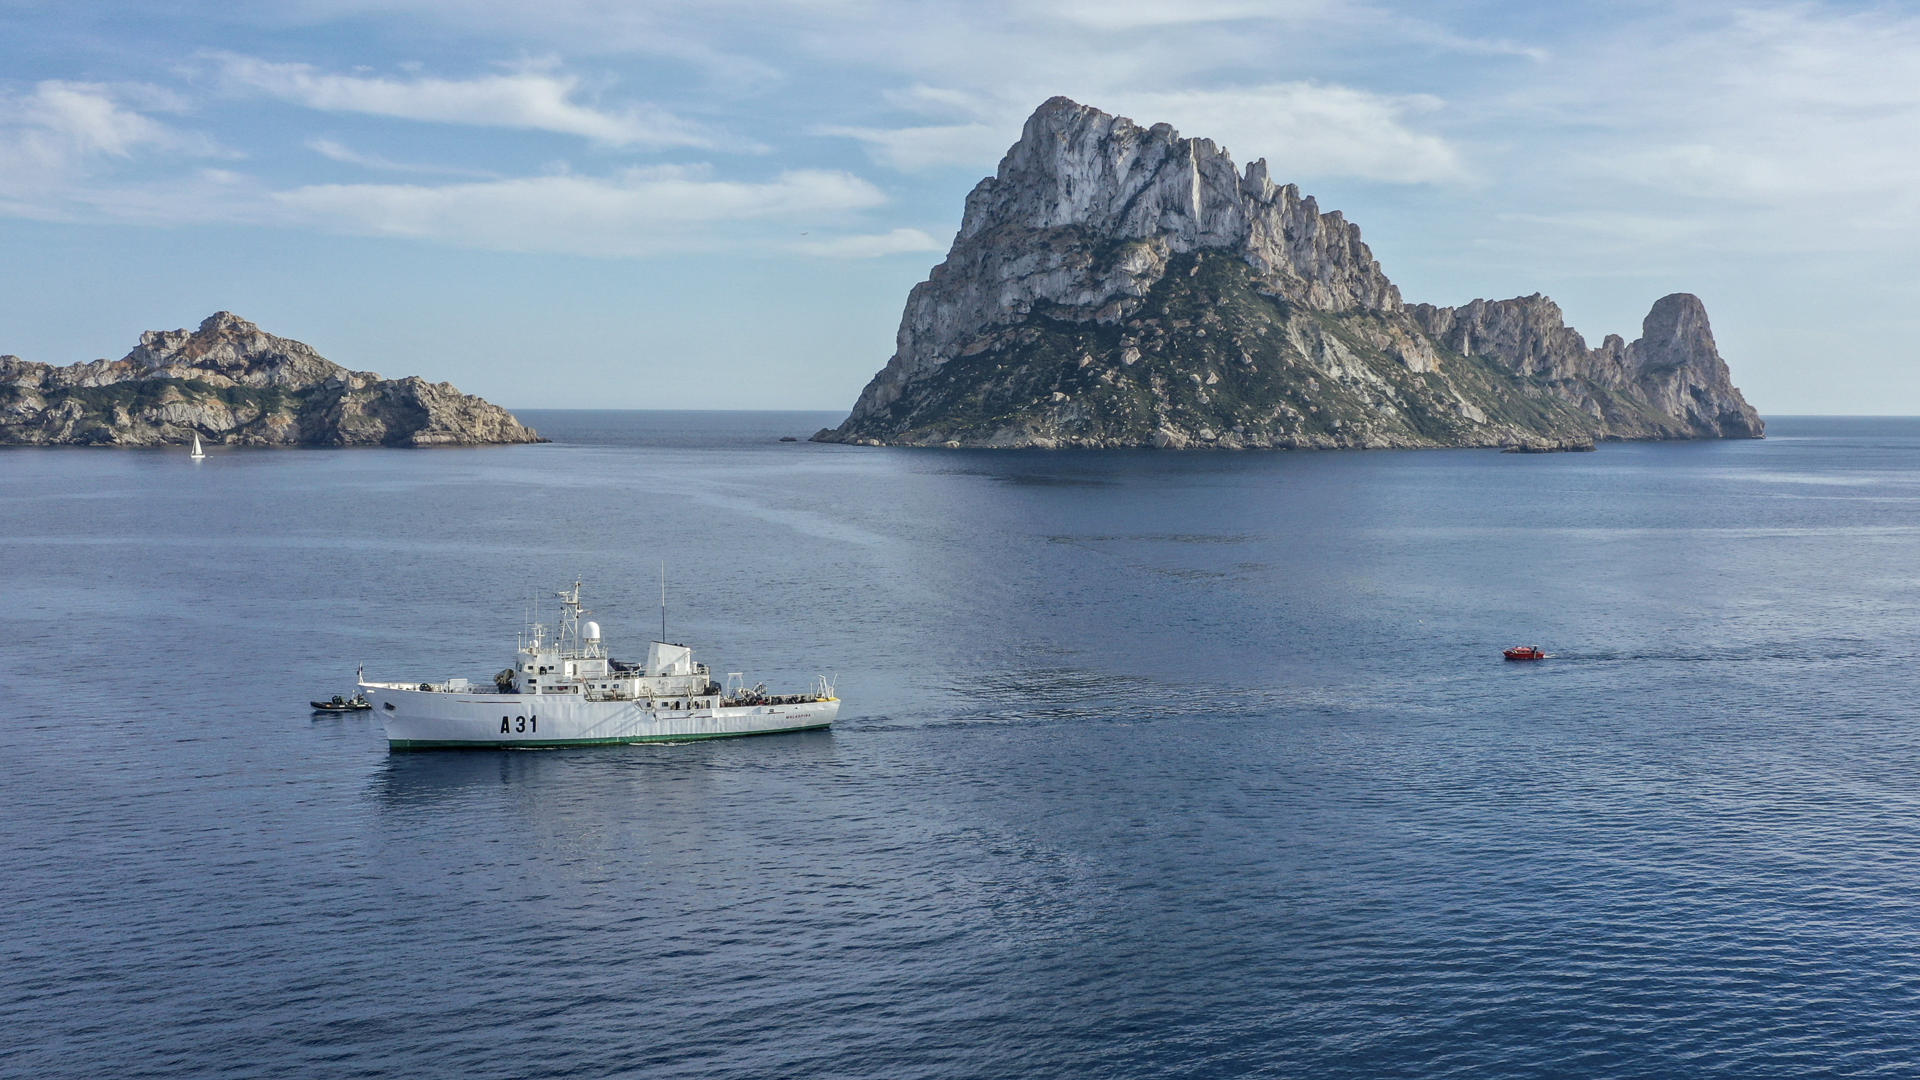 El buque hidrográfico Malaspina ha encallado este jueves en un bajo cerca de la isla de Es Vedrà, al sureste de Ibiza, cuando desarrollaba su misión de exploración. EFE/Sergio G. Cañizares